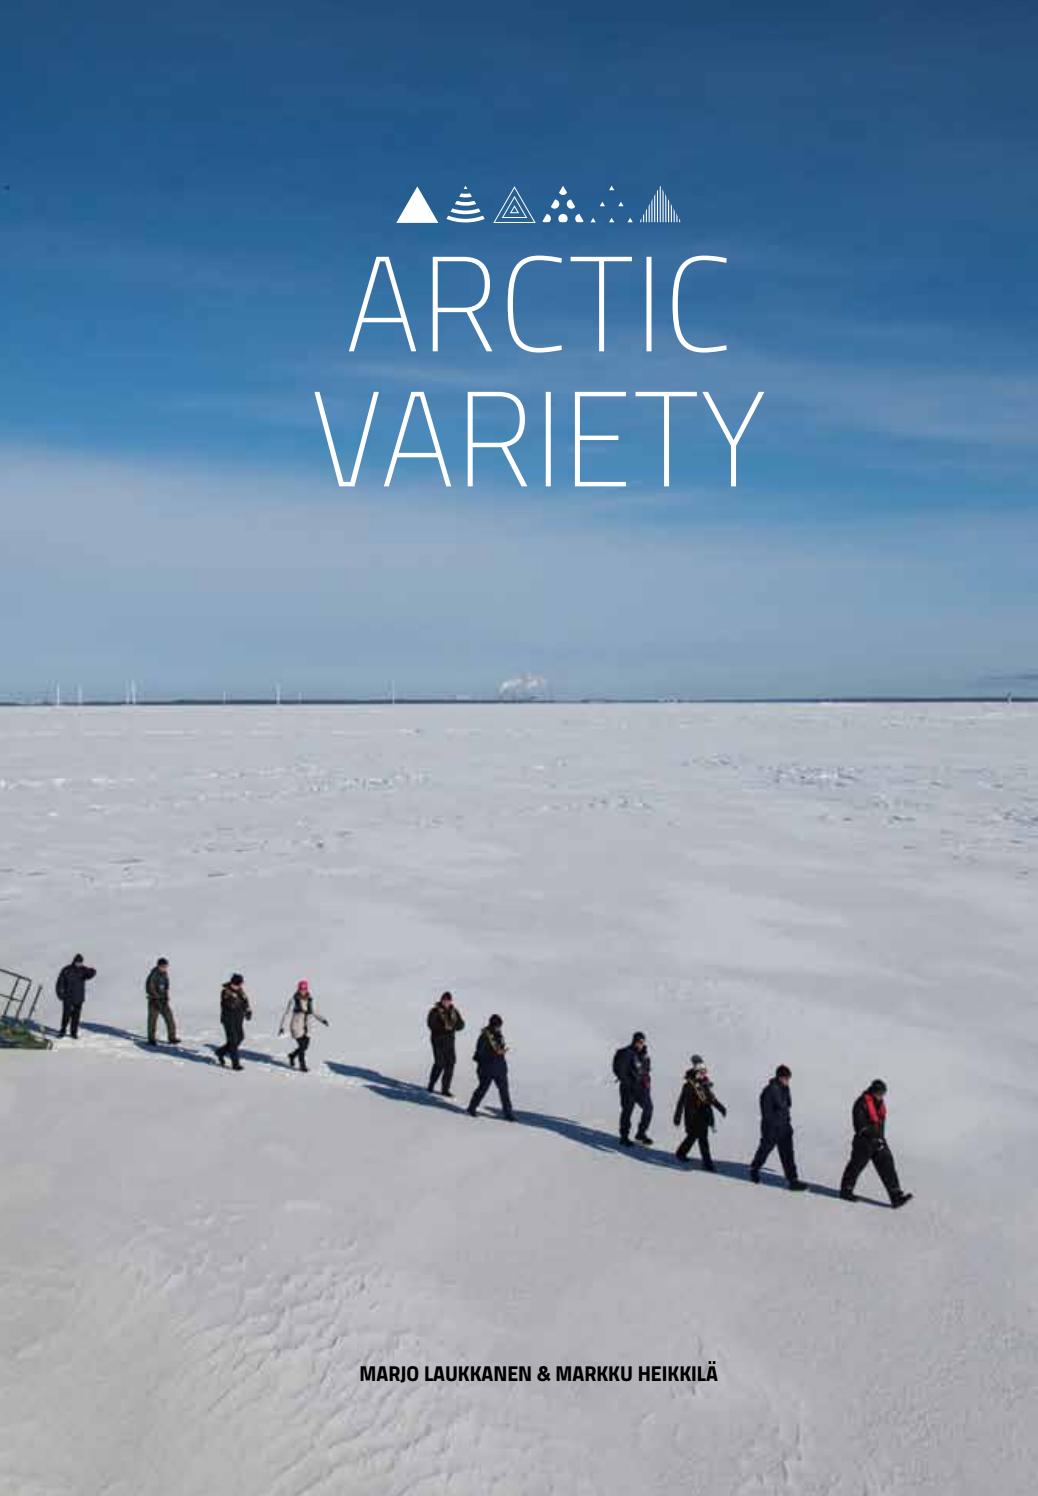 Couverture du livre "Arctic Variety".